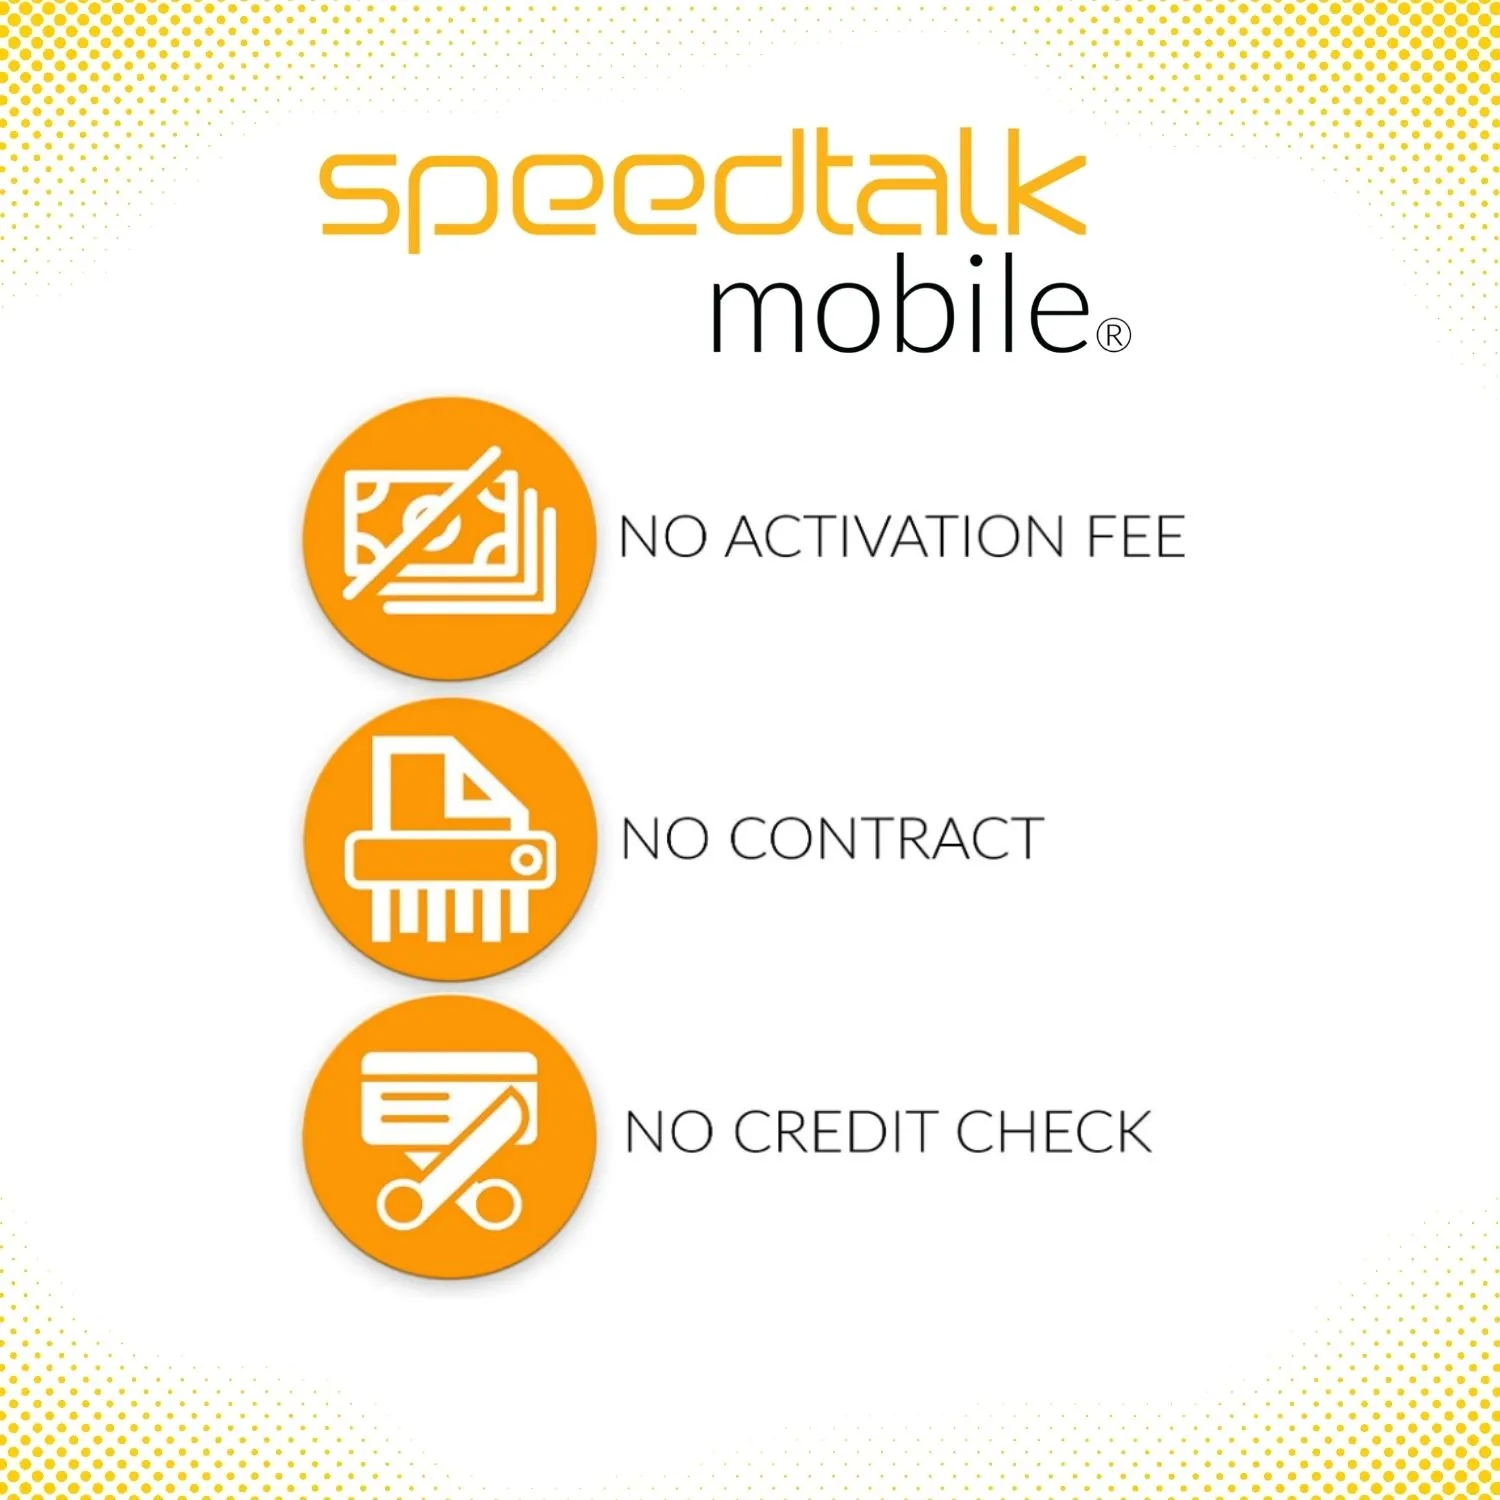 SpeedTalk - Tarjeta SIM para rastreadores GPS, dispositivos de seguimiento  4G LTE de actividad de vehículo para mascotas y niños, plan inalámbrico de